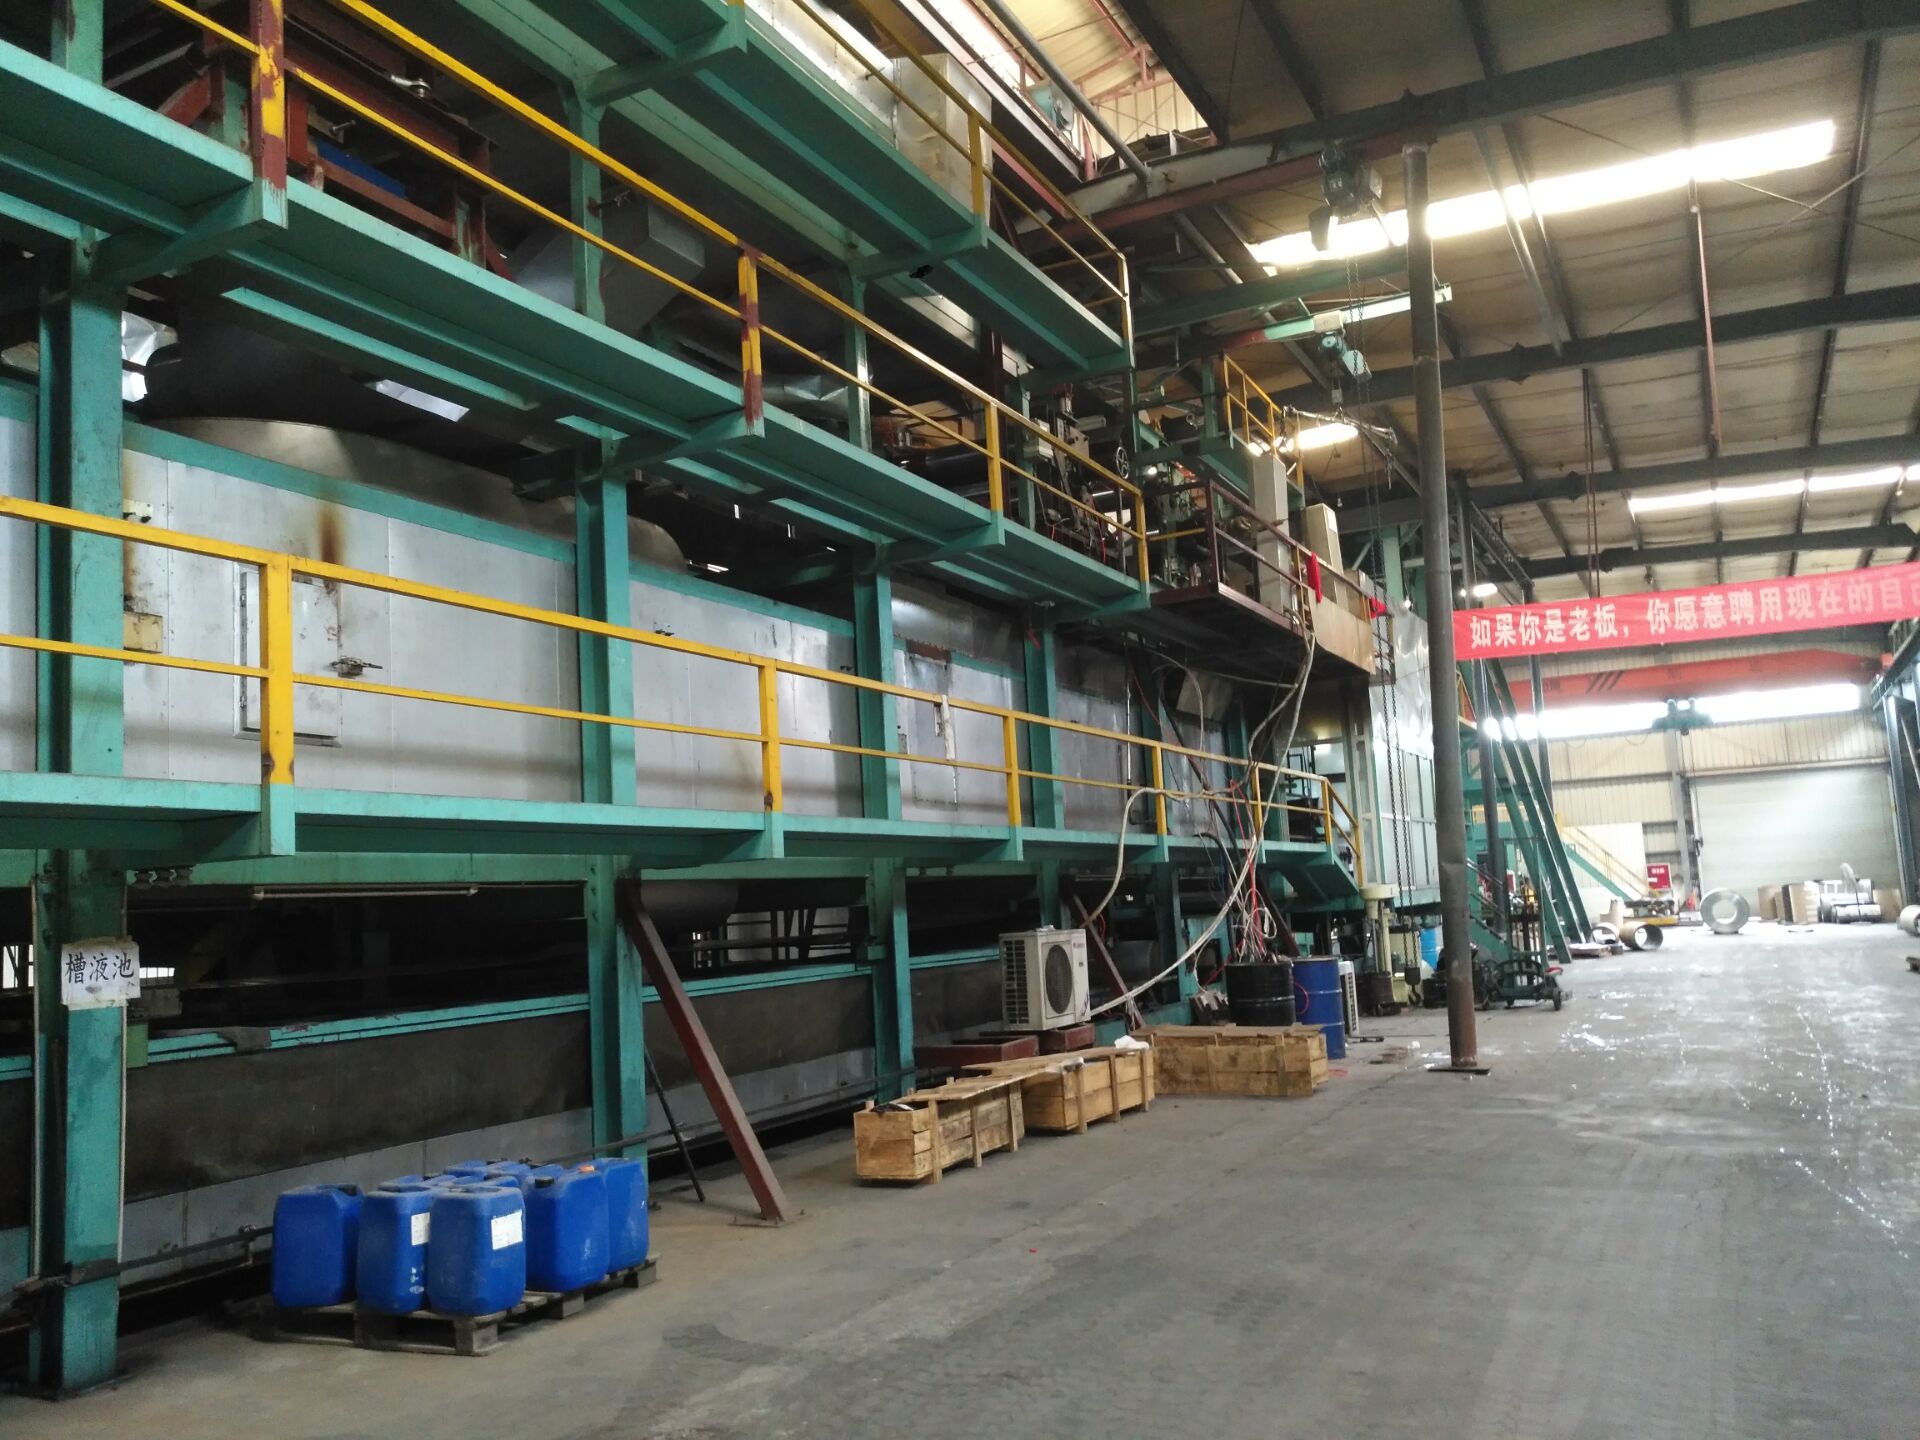 佛山南海区搬迁工厂设备回收/淘汰旧机械设备回收